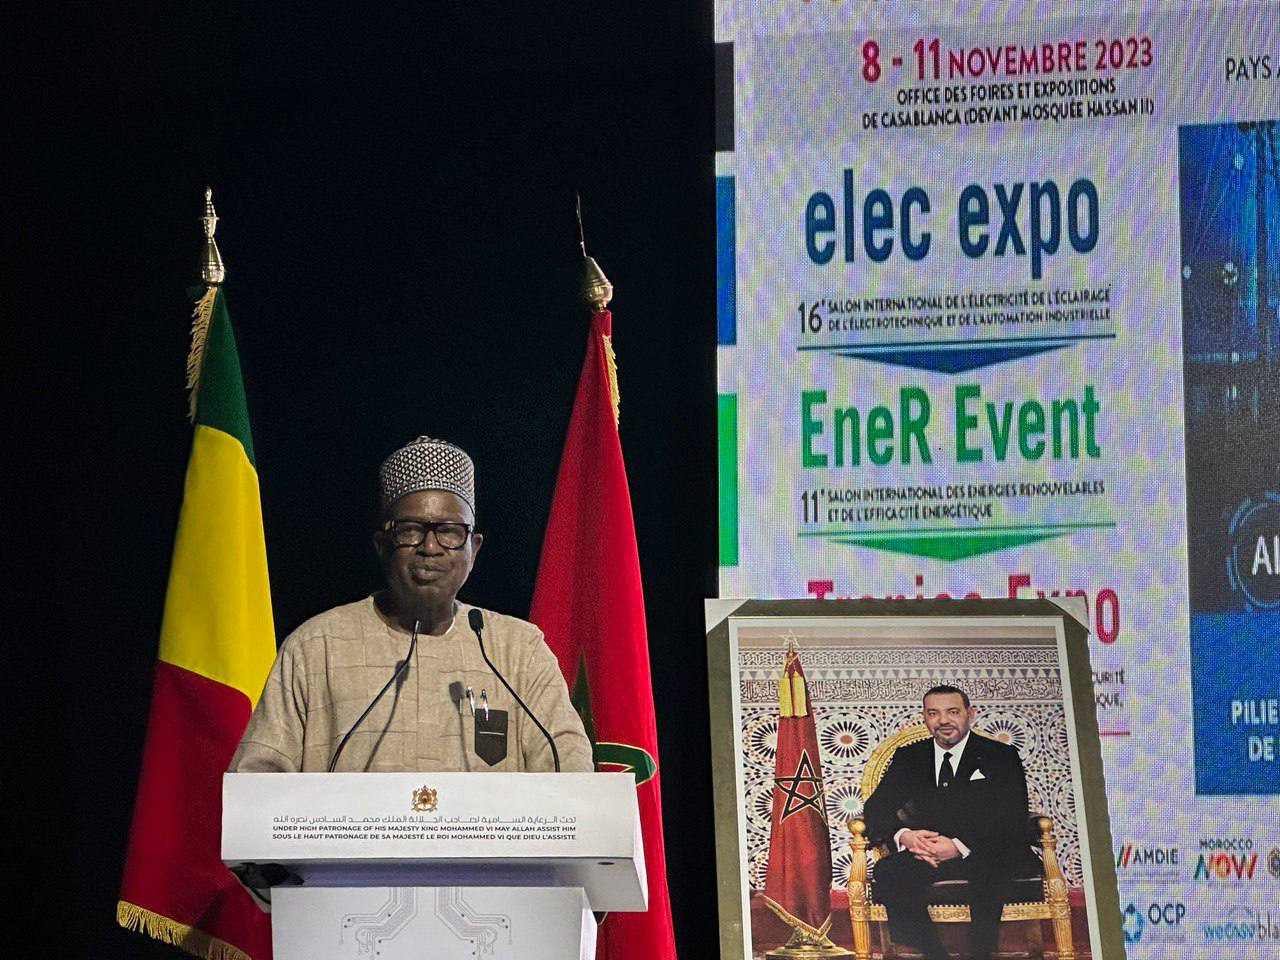 Состоялось официальное открытие выставки Elec-expo в Марокко